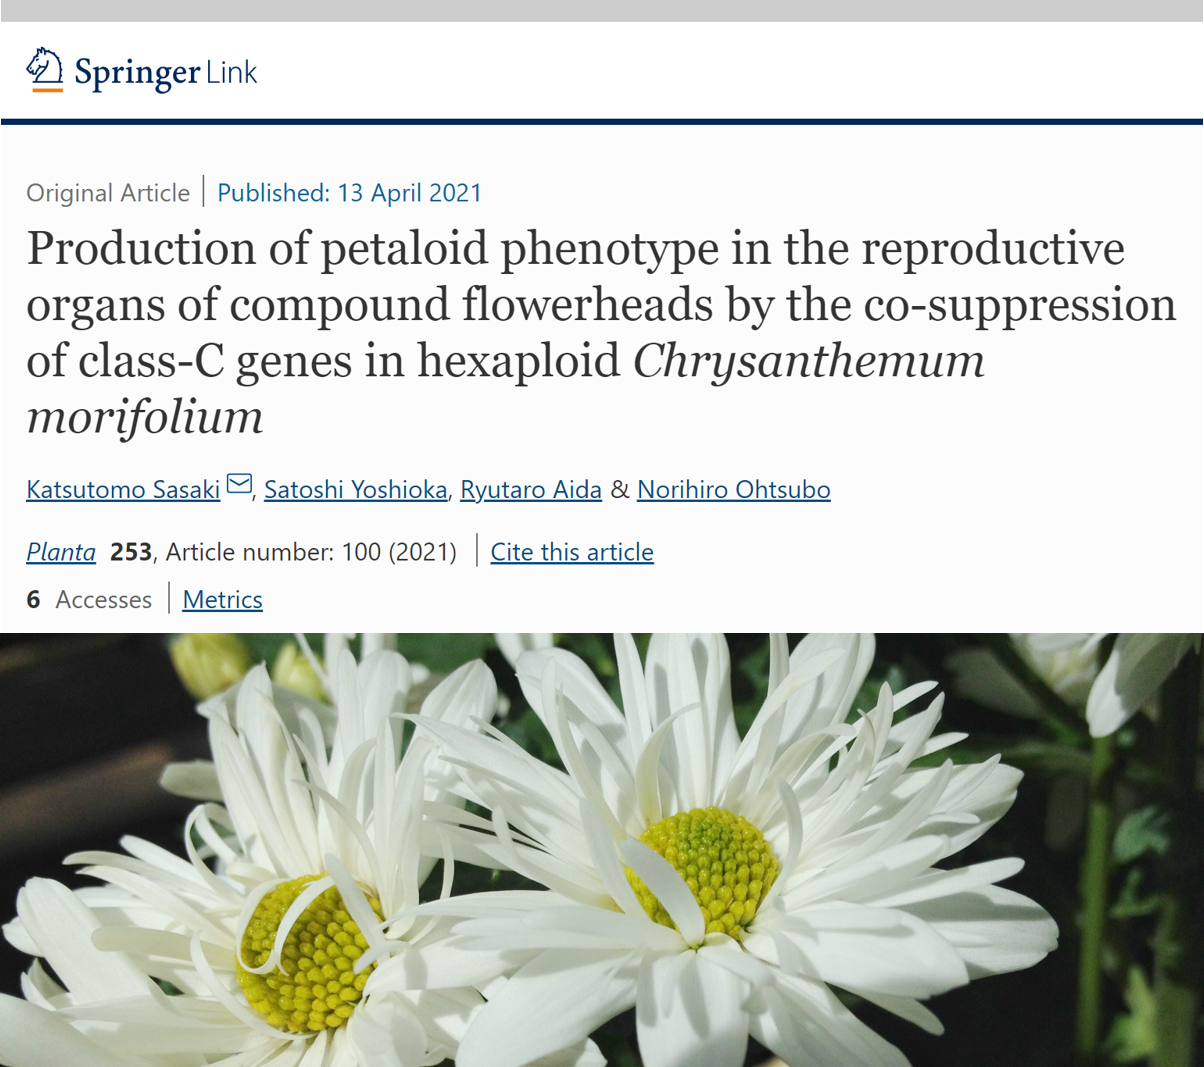 遺伝子組換えによる「八重咲きのキク」の作出に世界で初めて成功し、その成果が学術雑誌Plantaに掲載されました